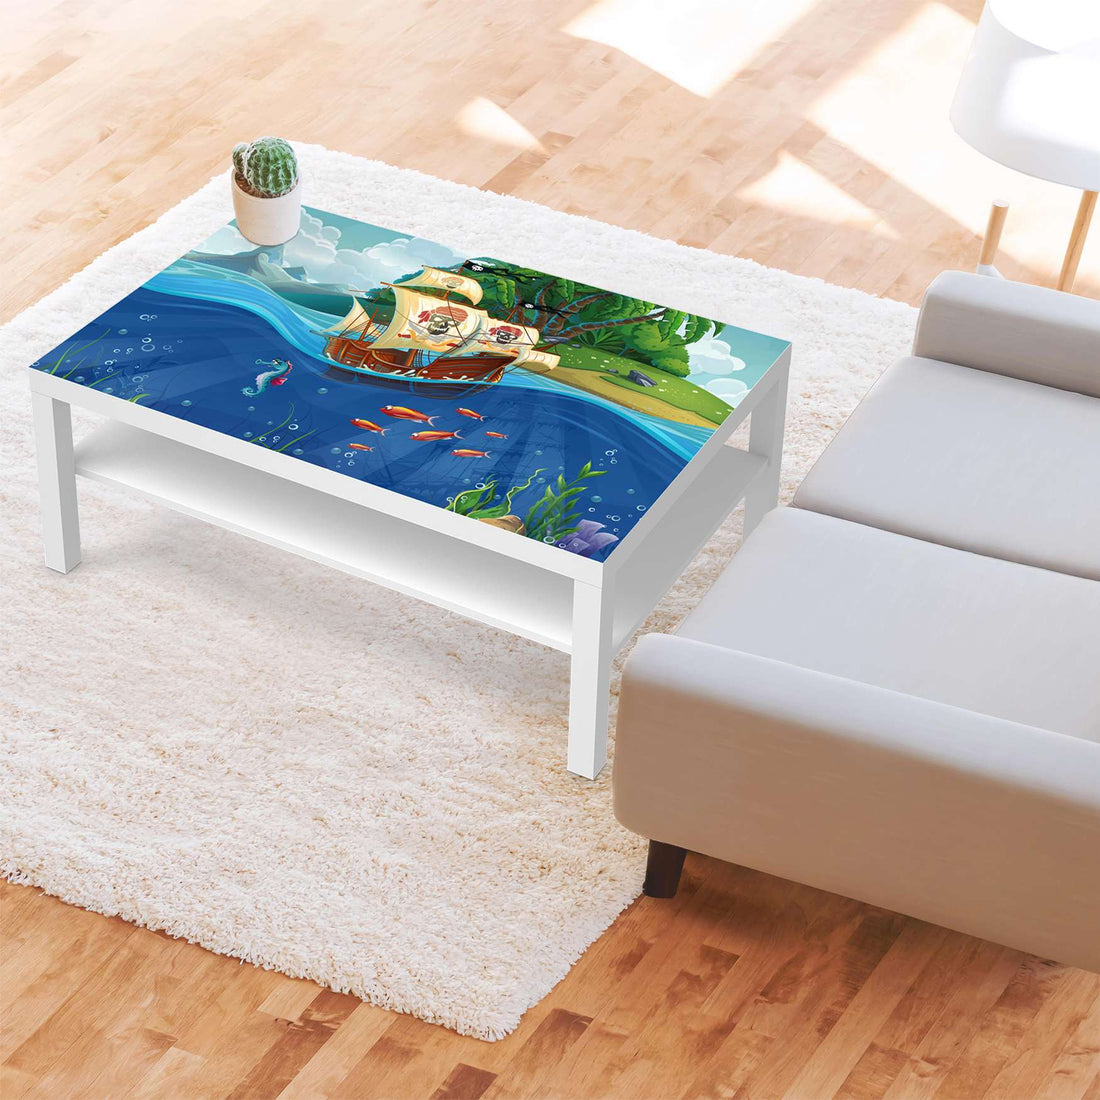 Klebefolie Pirates - IKEA Lack Tisch 118x78 cm - Kinderzimmer